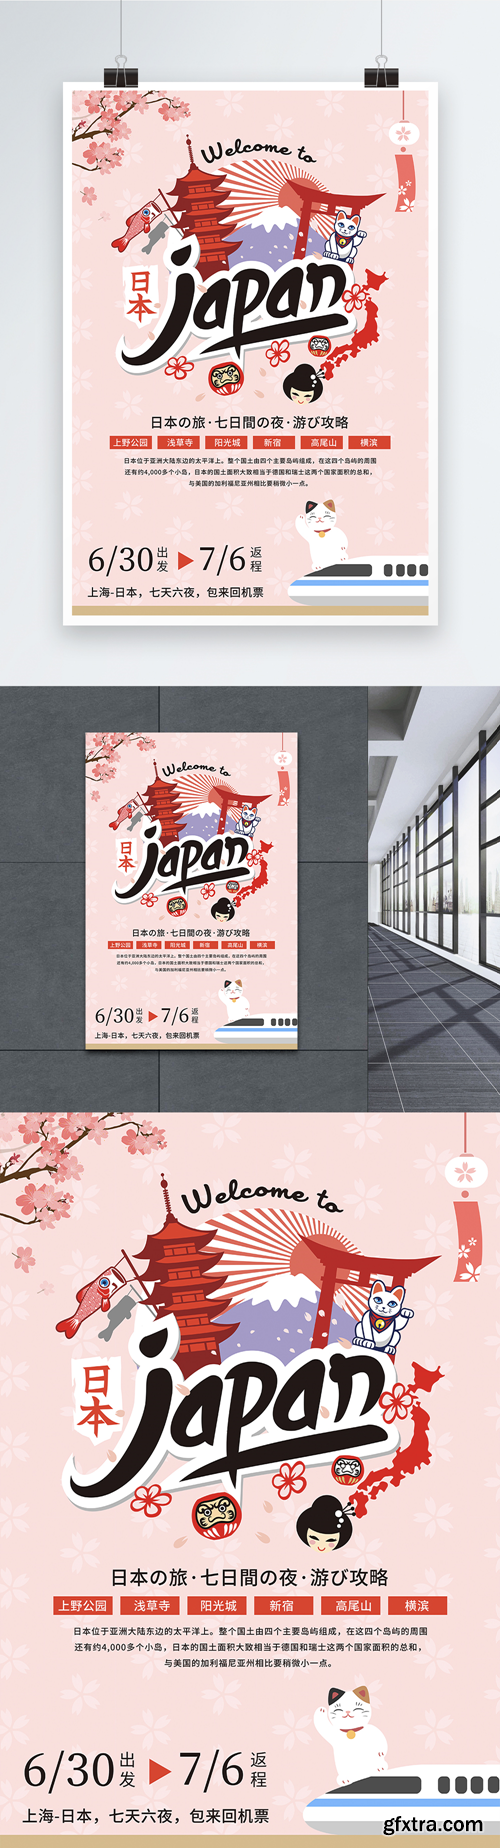 japanese travel poster design